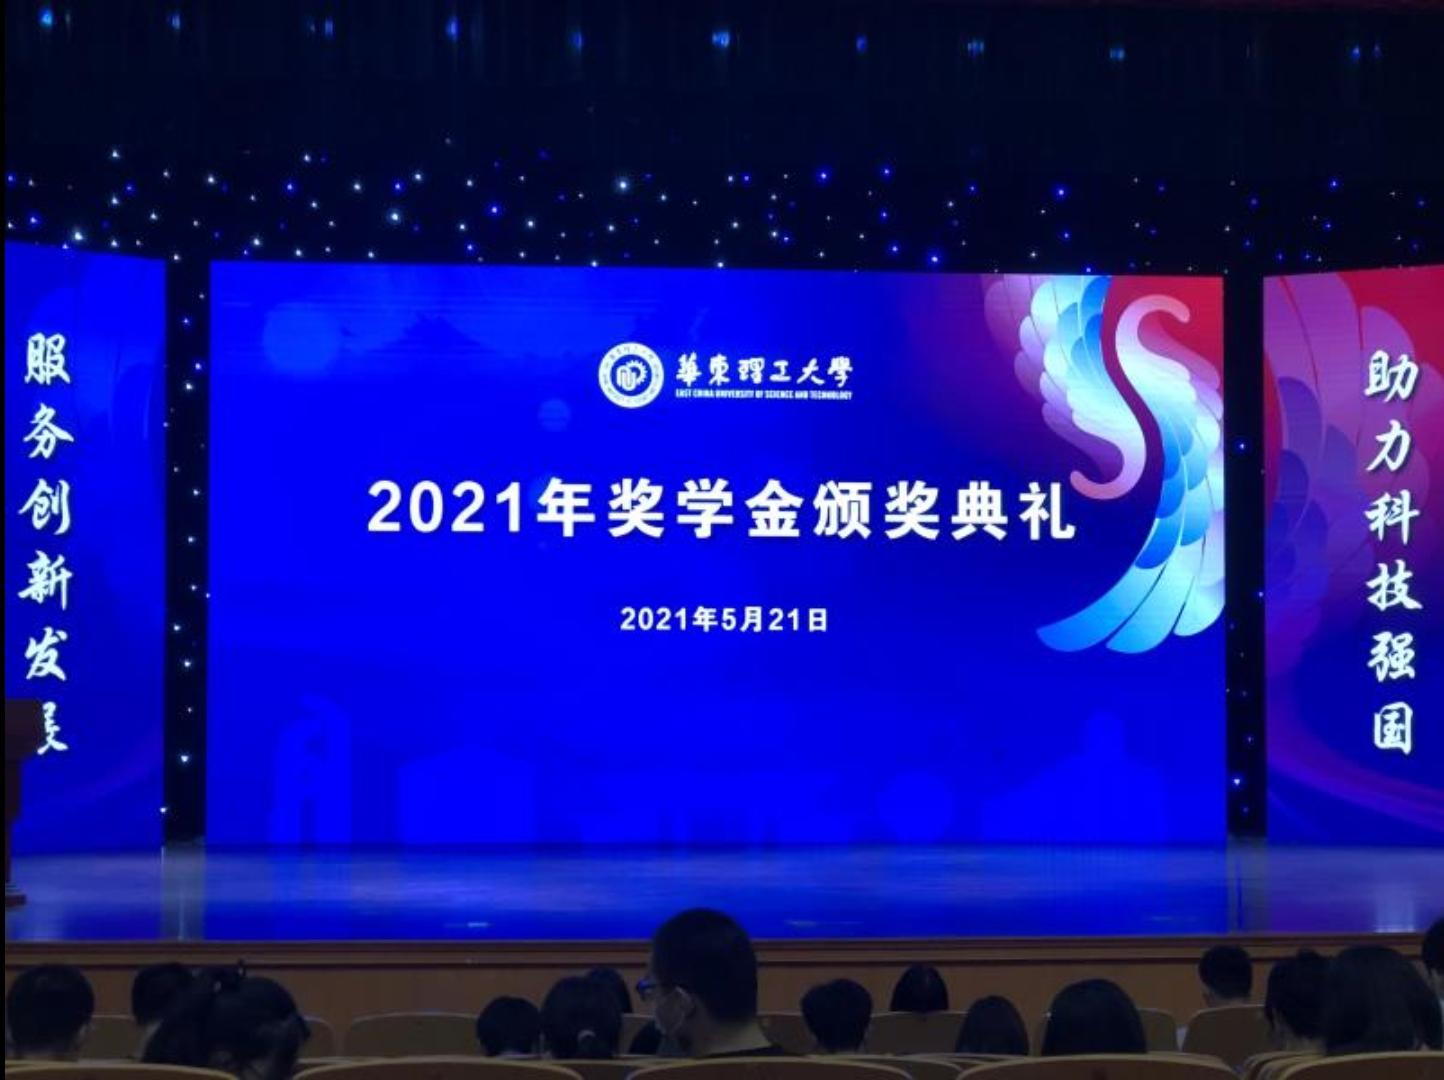 2021年5月 我公司参加了华东理工大学2021年奖学金颁奖典礼